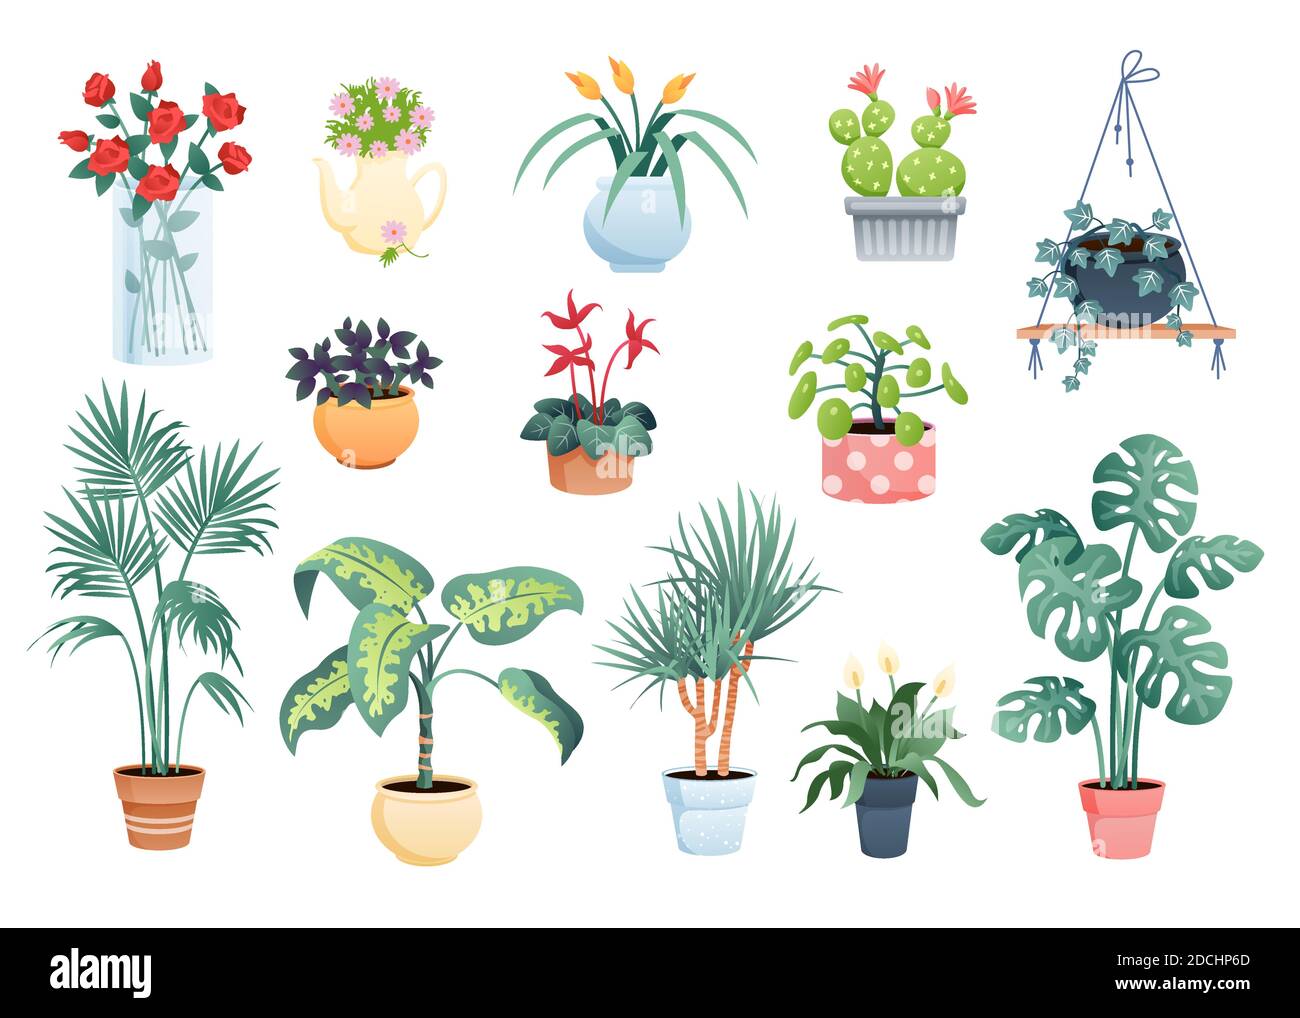 Haus Pflanzen Heim Dekor Vektor Illustration set, Cartoon flach  Topfpflanzen und Blumen Sammlung von Zimmerpflanzen isoliert auf weiß  Stock-Vektorgrafik - Alamy